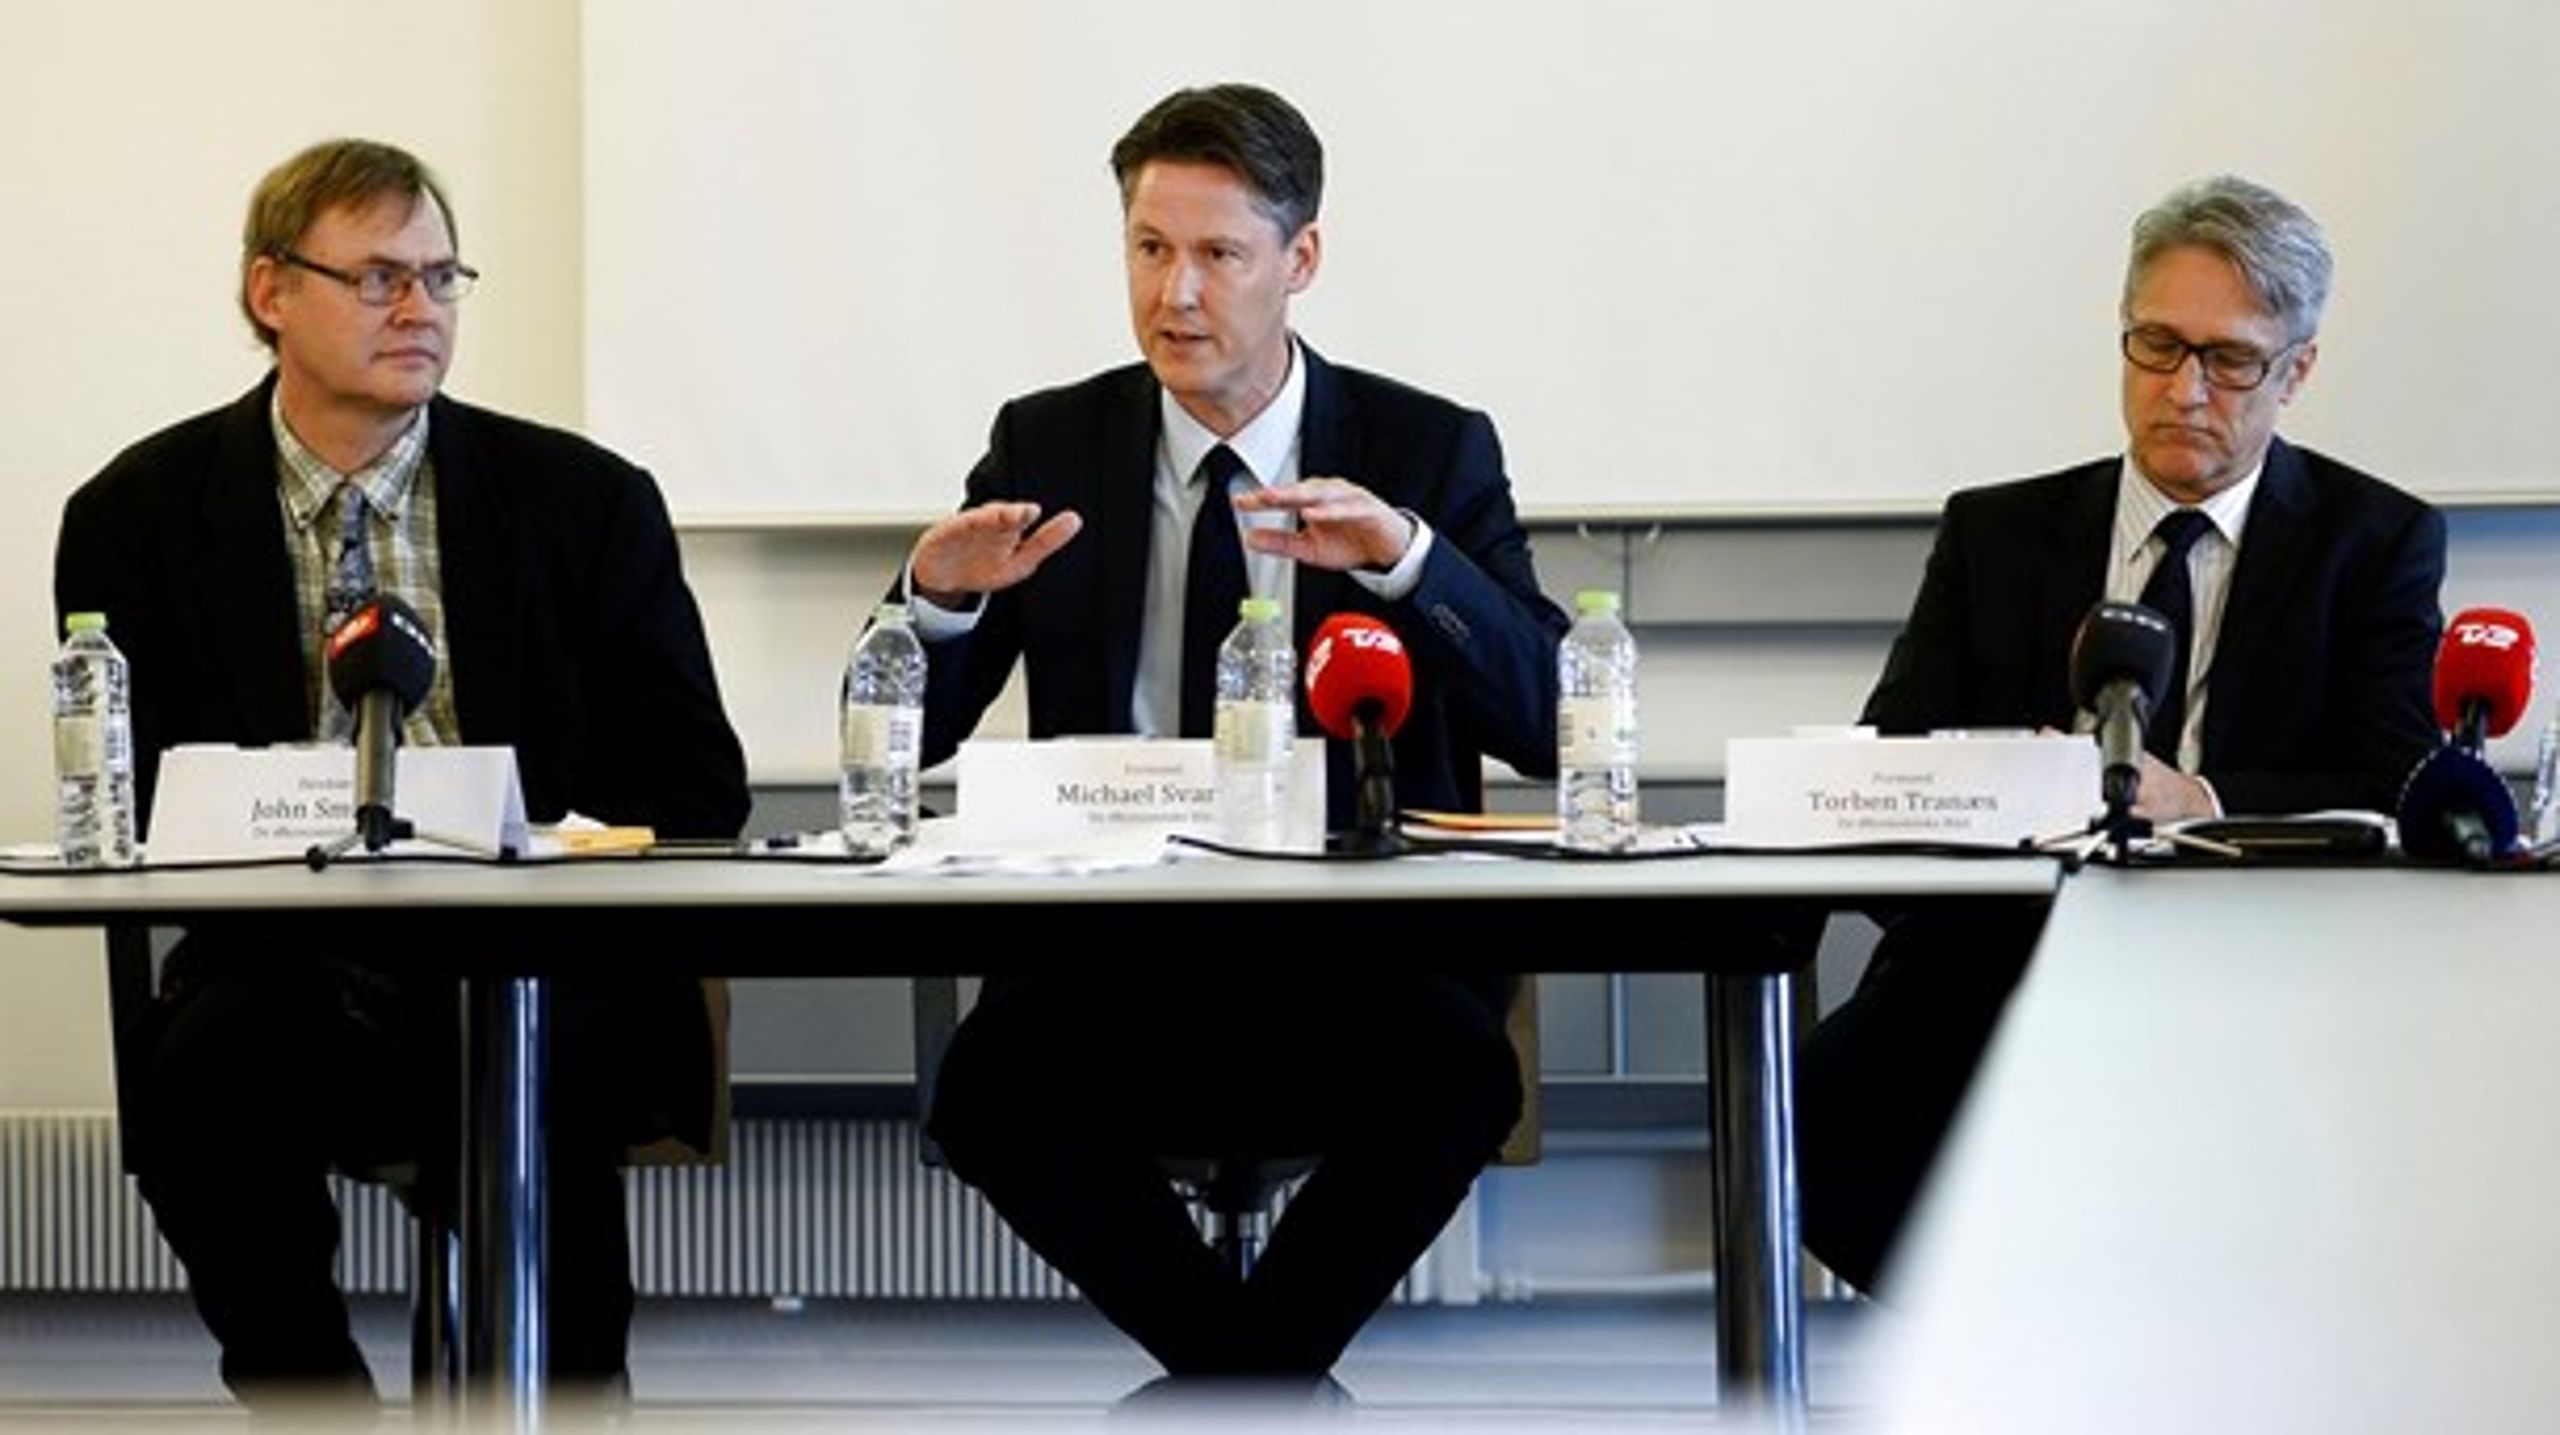 Overvismand Michael Svarer (i midten)
præsenterer De Økonomiske Råds efterårsrapport i oktober 2016. I år kommer
efterårsrapporten først til vinter. Til venstre ses direktør John Smidt og til
højre vismand Torben Tranæs. 